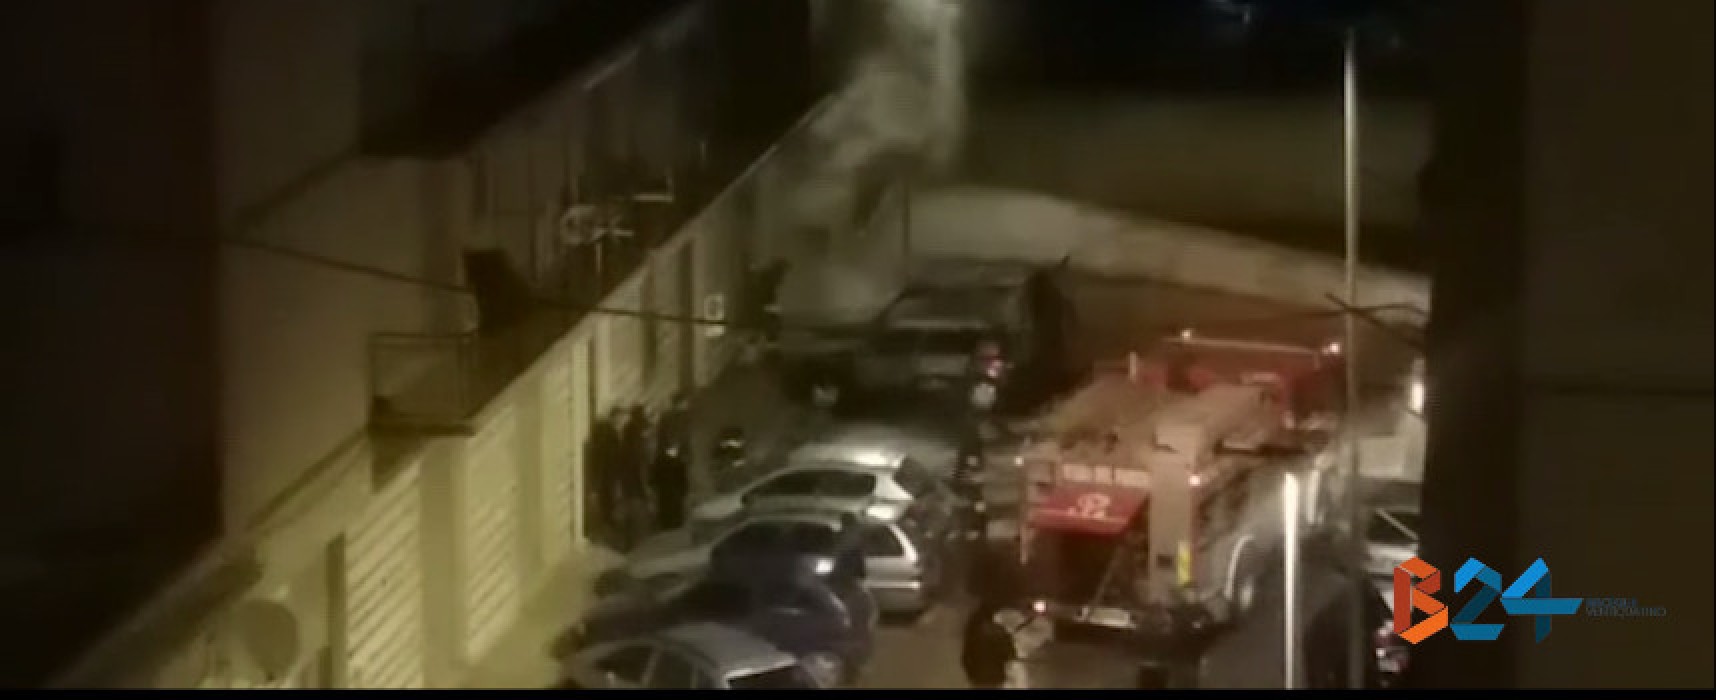 Incendiate altre due auto nella notte, questa volta in via Trani / VIDEO